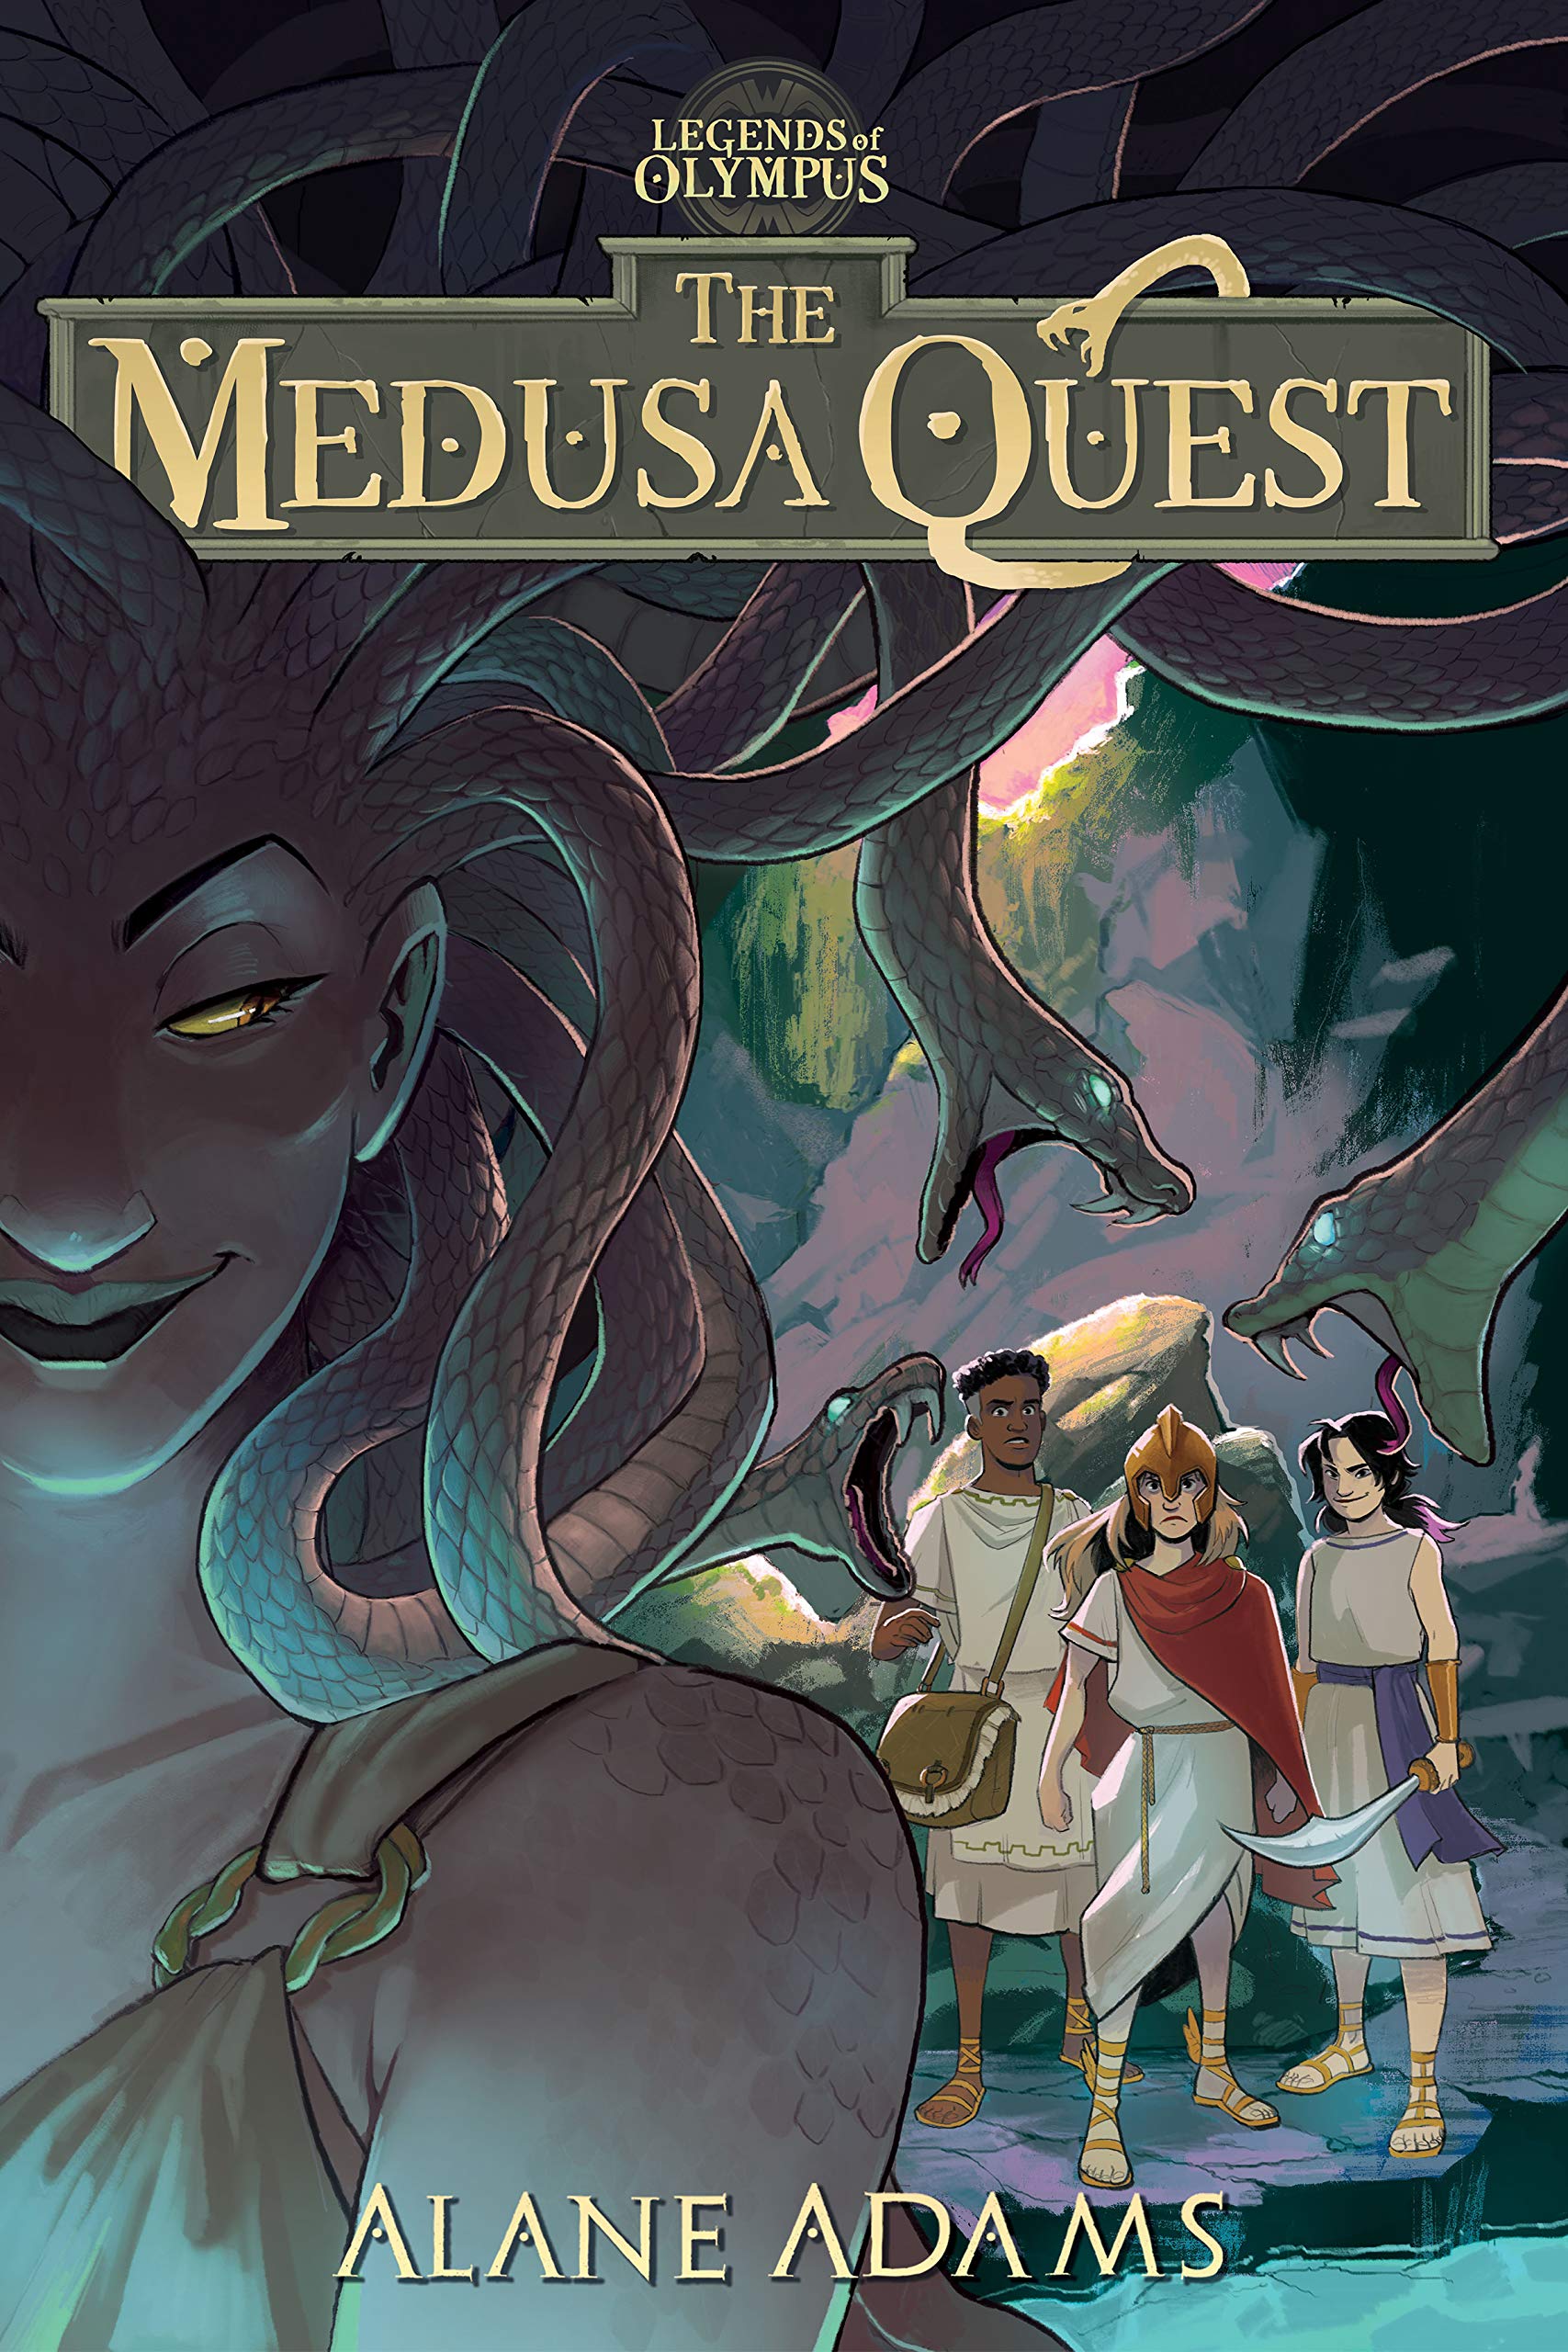 The Medusa Quest